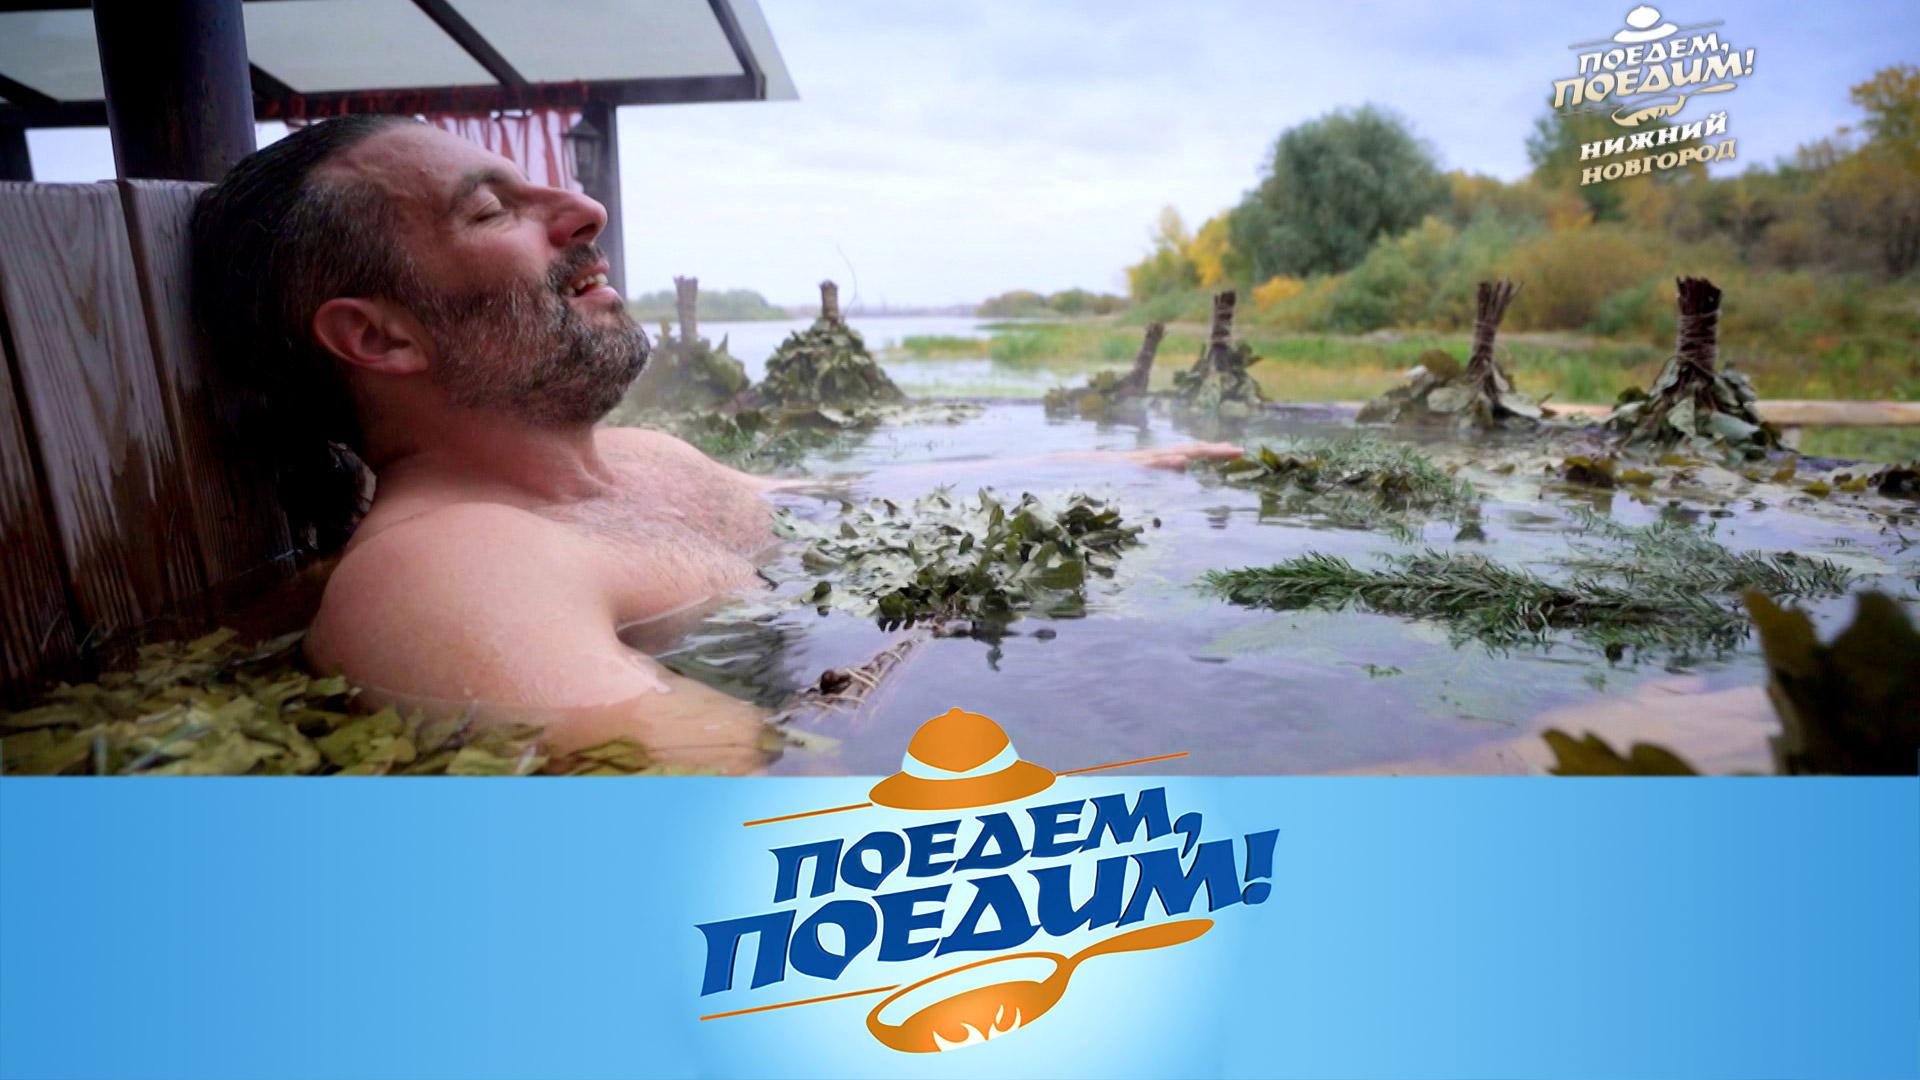 Нижний Новгород: древнерусская баня, огненный коктейль и манник с ягодами | Поедем, поедим!